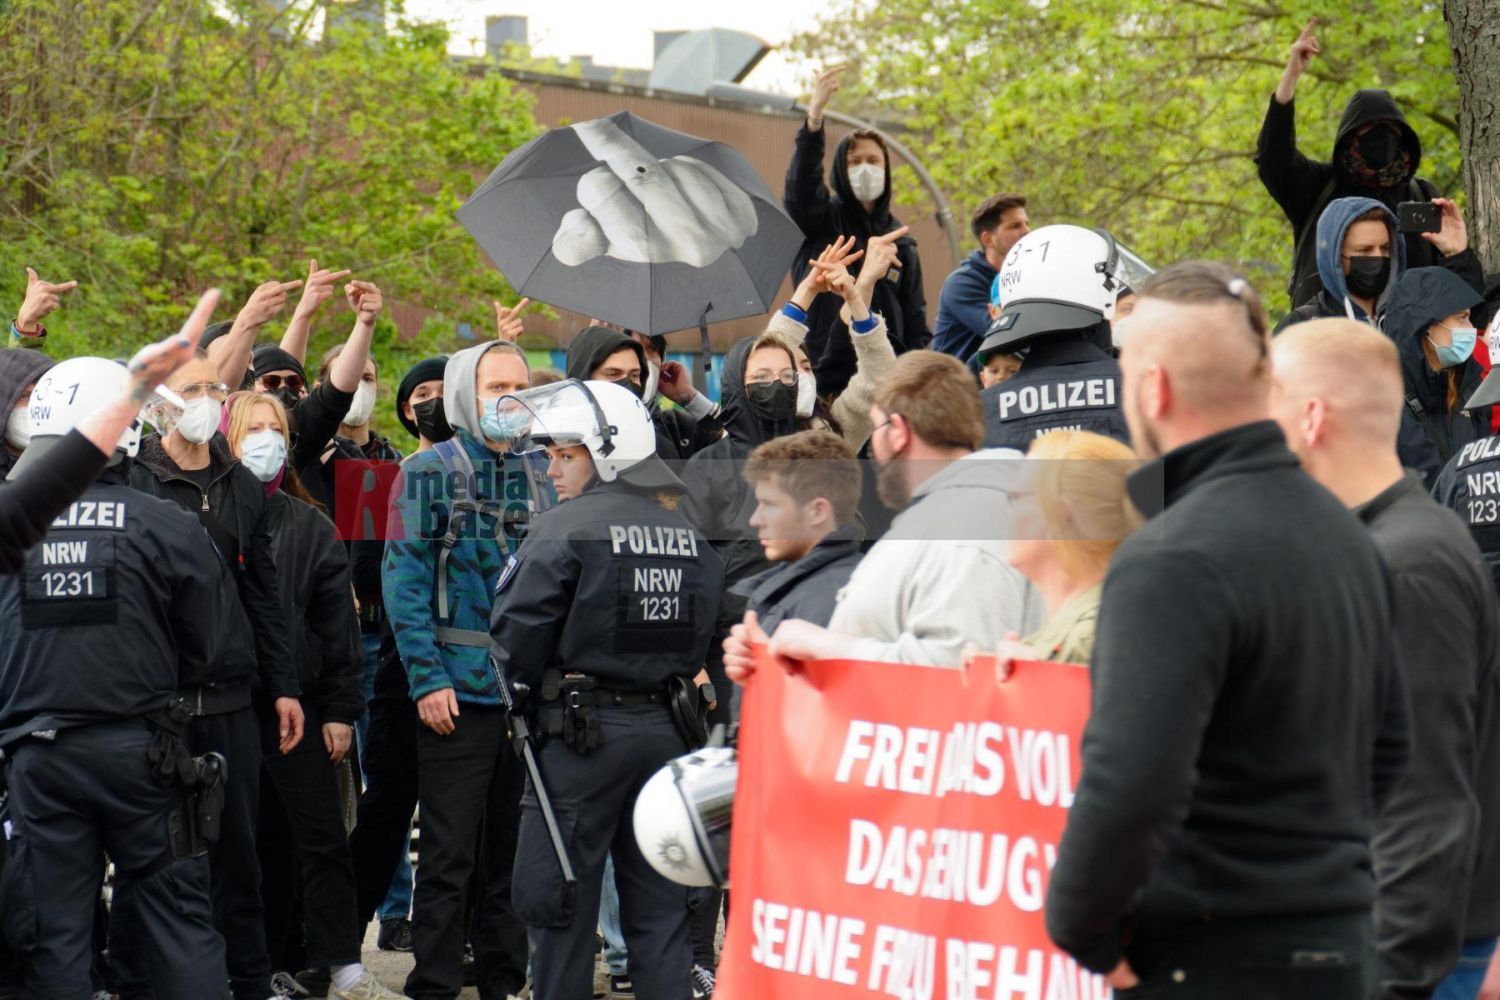 Protestaktionen gegen die Demonstration der Partei Die Rechte in Dortmund am 1. Mai 2022 unter dem Motto Heraus zum Tag der Arbeit <i>Bild Anonymus/R-mediabase</i> <br><a href=/confor2/?bld=65429&pst=65423&aid=597&dc=1420&i1=Anonymus/R-mediabase>Anfrage Download Bild 65429</a>  <a href=/wp-admin/post.php?post=65429&action=edit> / Edit</a><br><a href=/?p=65423>Zum Beitrag 65423</a>